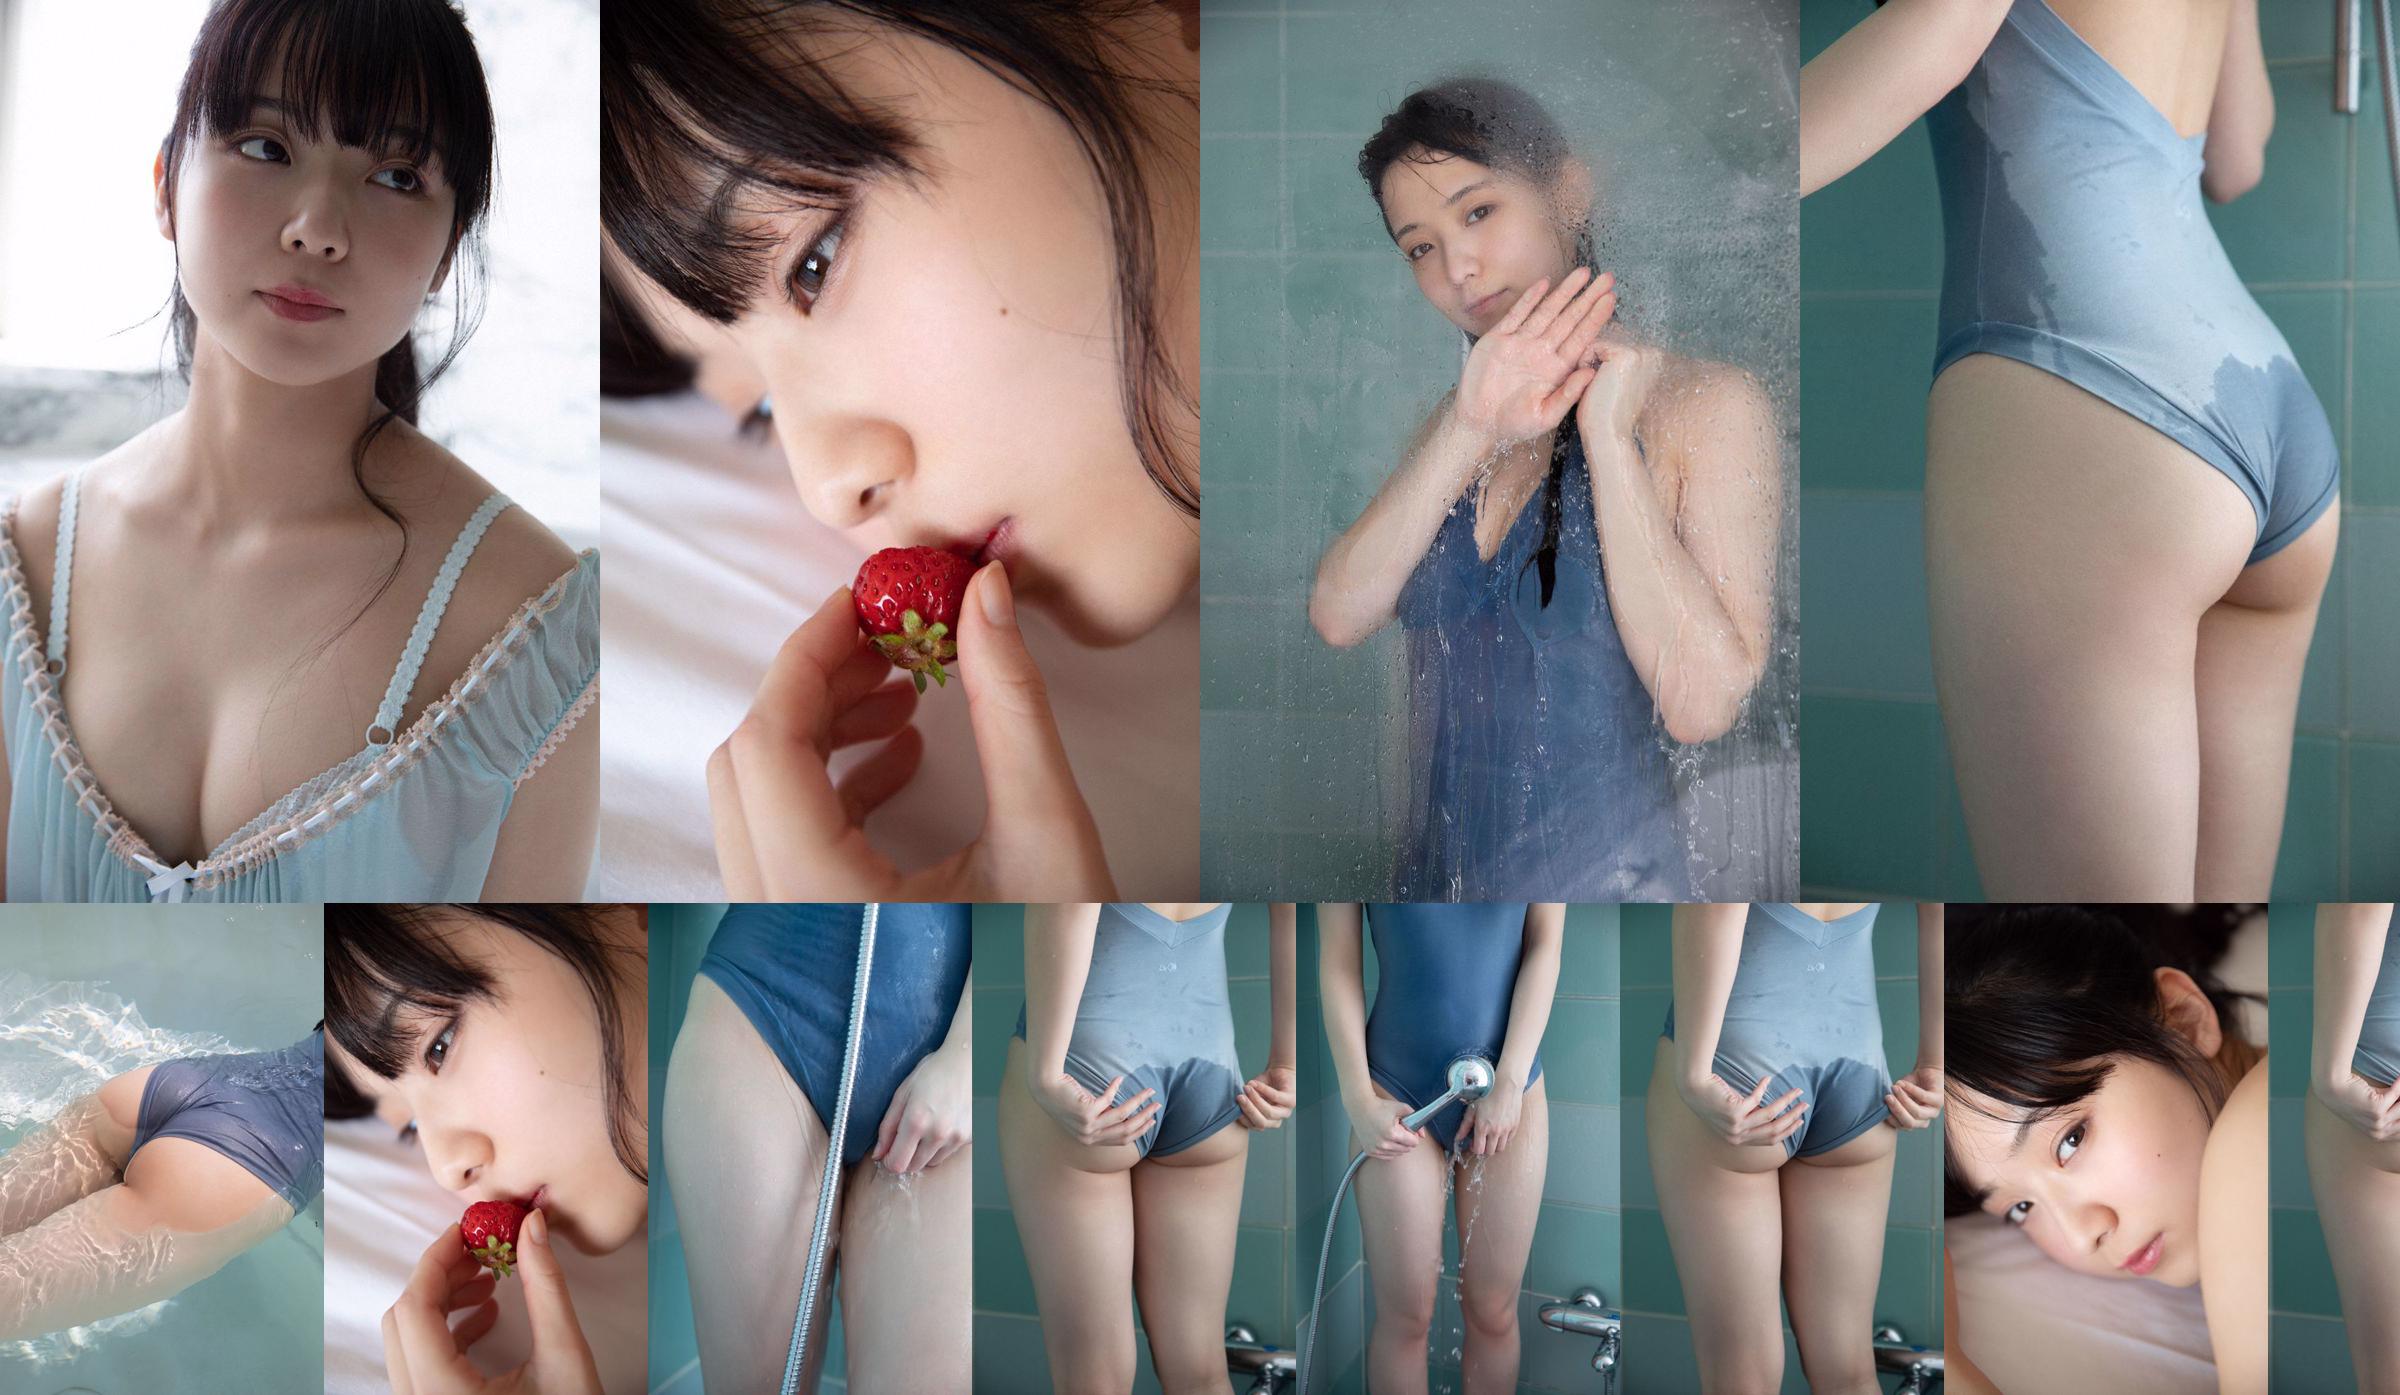 [VENERDI] Mio Imada "Miracolo dell'attrice + bikini nel dramma" Hana nochi Hare "" Foto No.79a398 Pagina 1